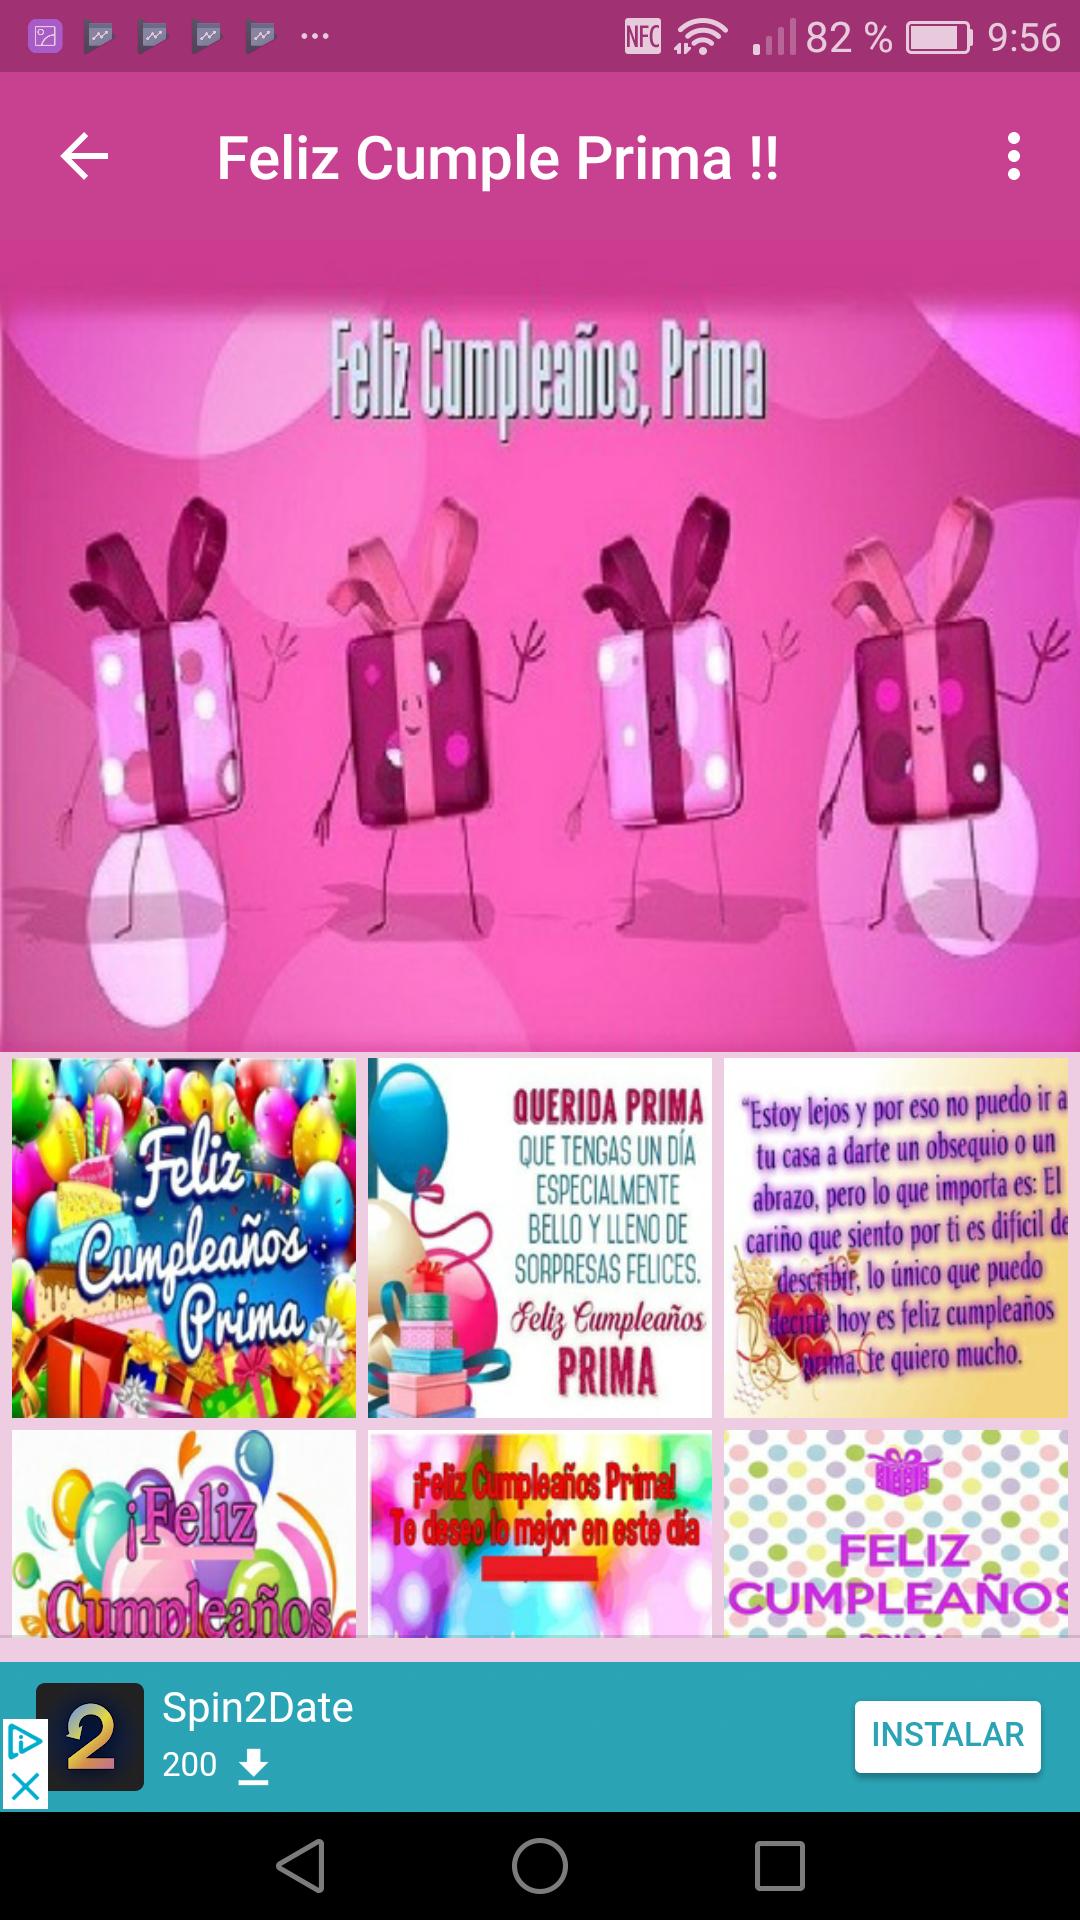 Feliz Cumpleanos Prima For Android Apk Download - 82 mejores imágenes de roblox en 2019 cumpleaños fiesta